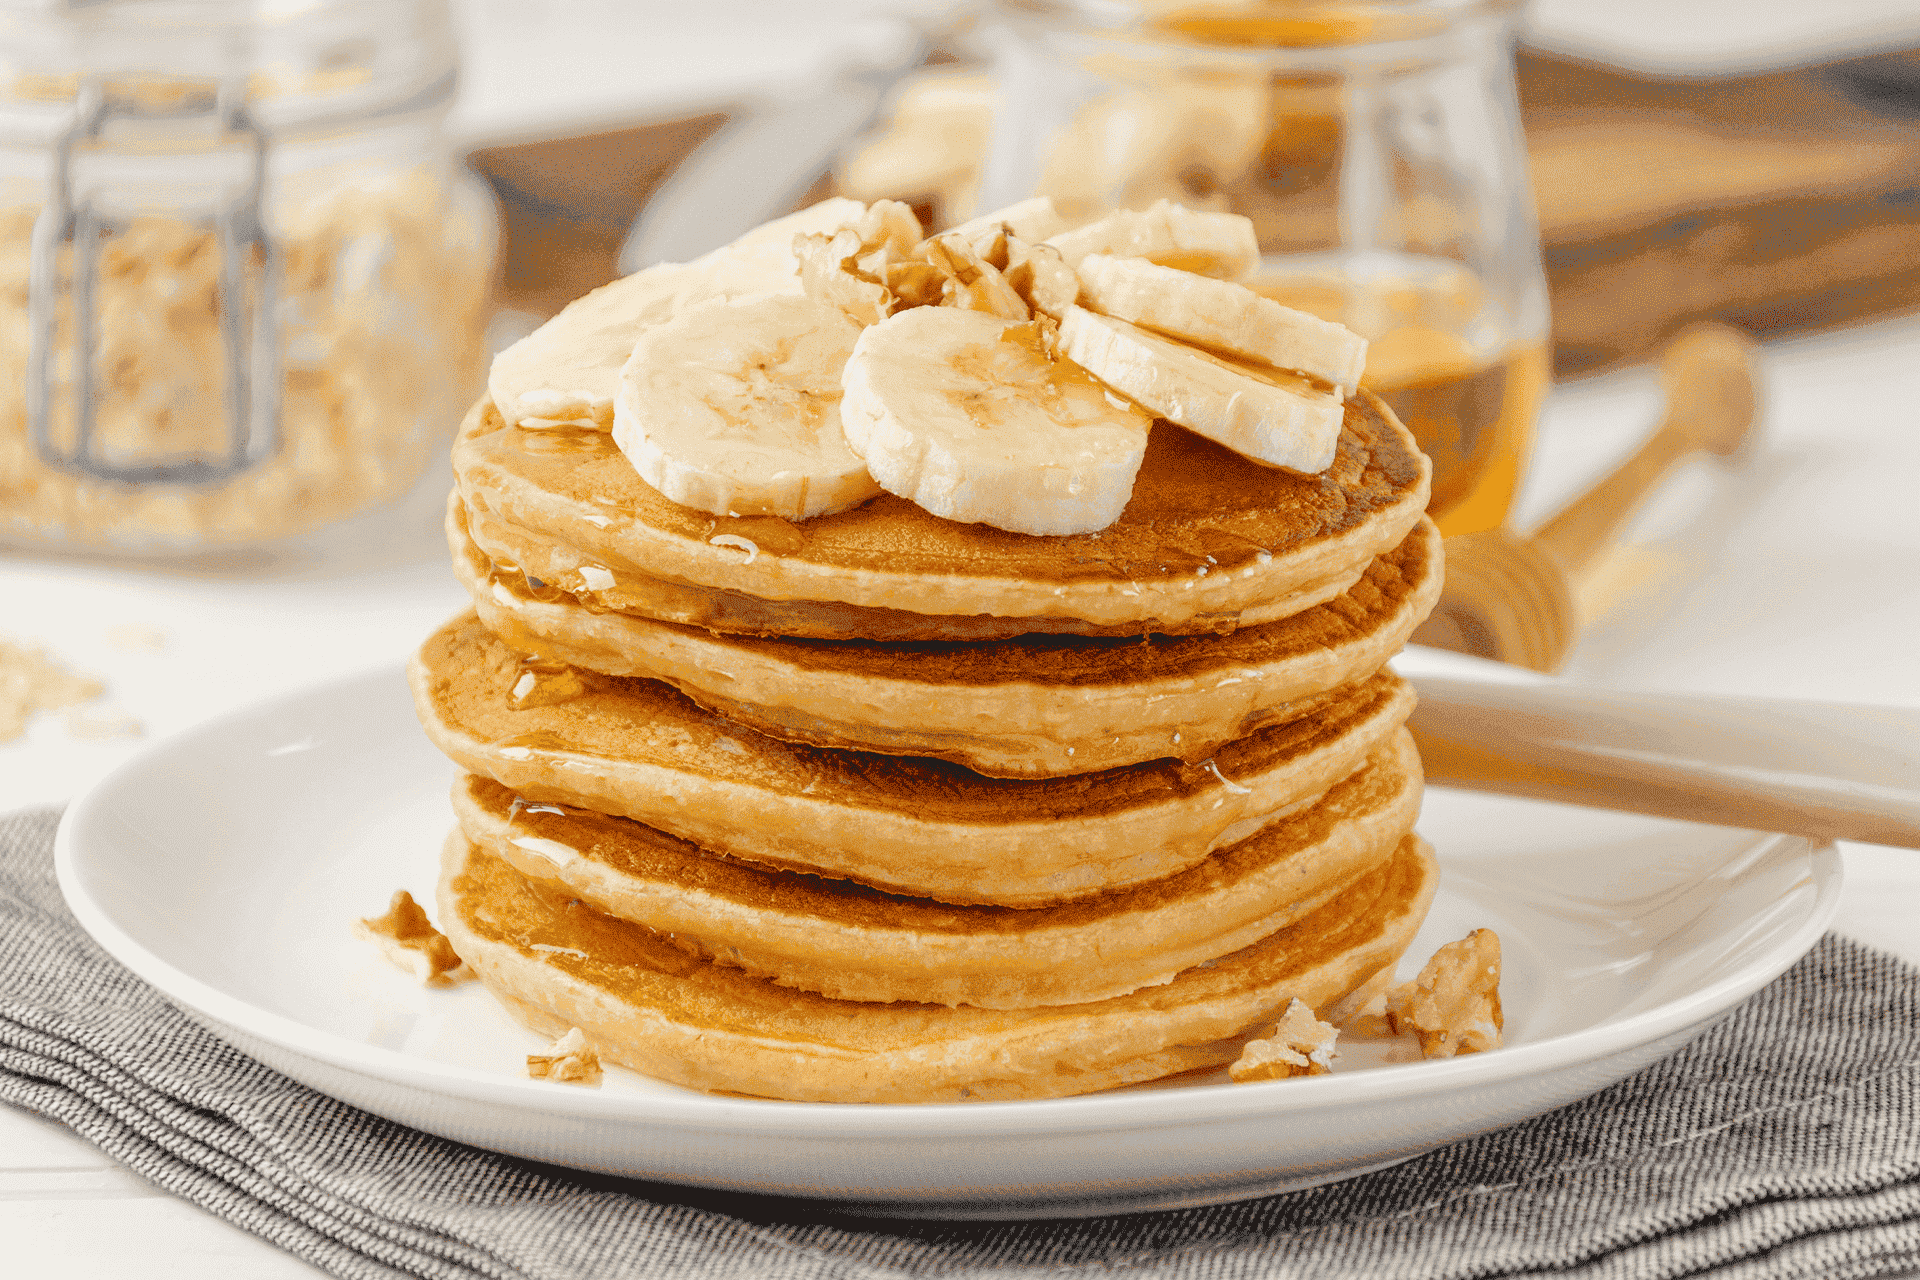 Pancakes con banano y miel.